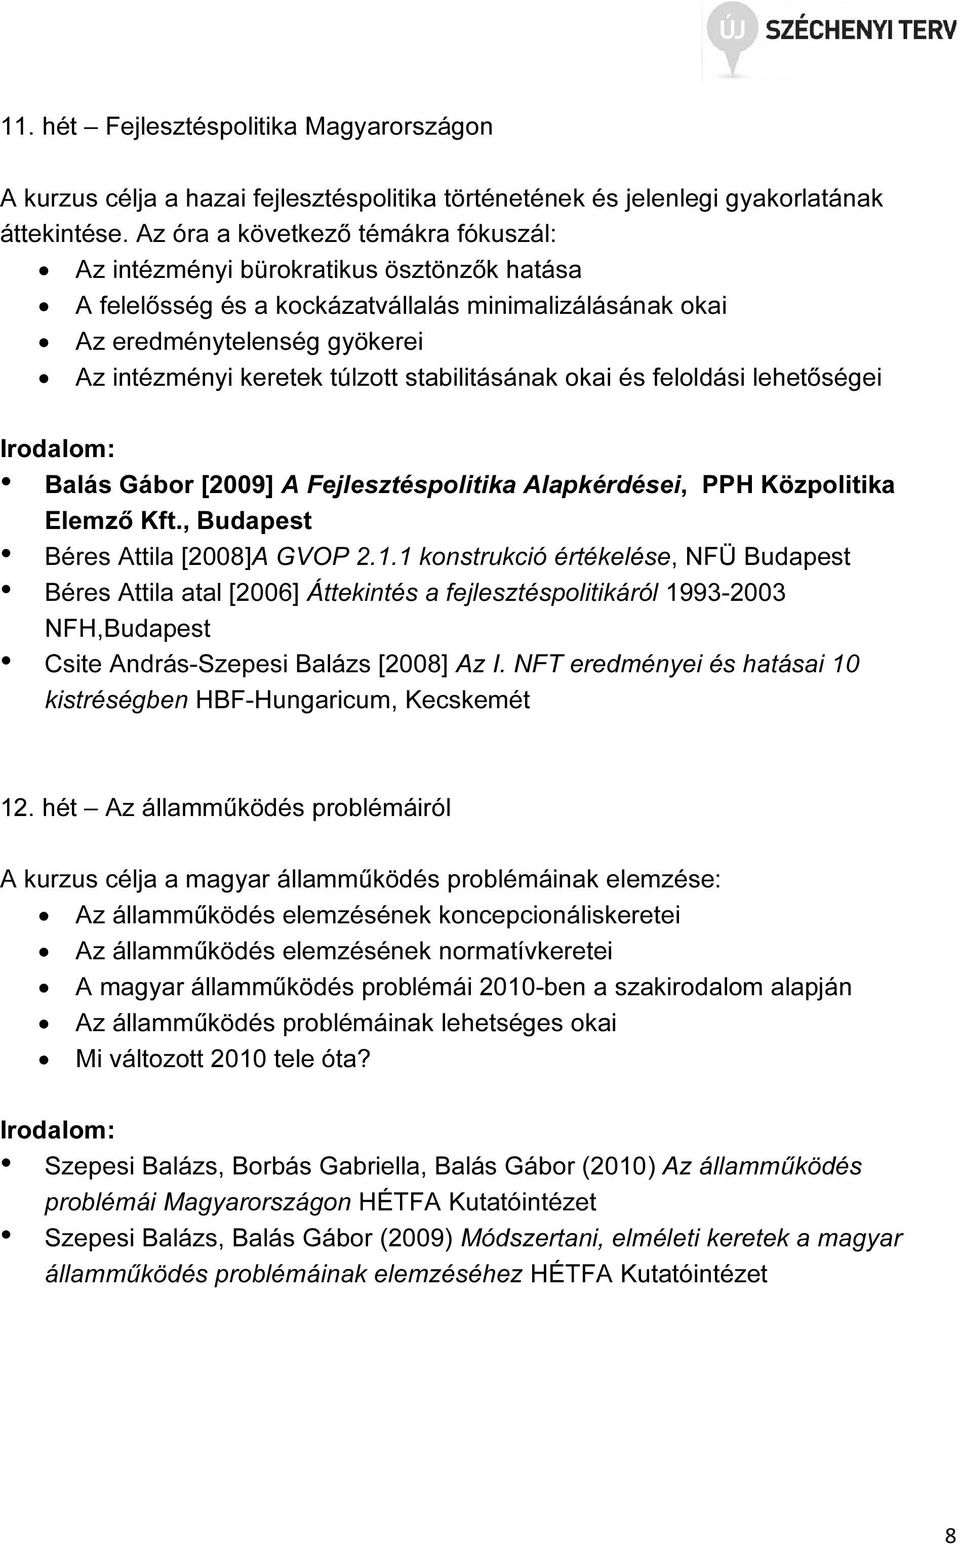 stabilitásának okai és feloldási lehetőségei Balás Gábor [2009] A Fejlesztéspolitika Alapkérdései, PPH Közpolitika Elemző Kft., Budapest Béres Attila [2008]A GVOP 2.1.